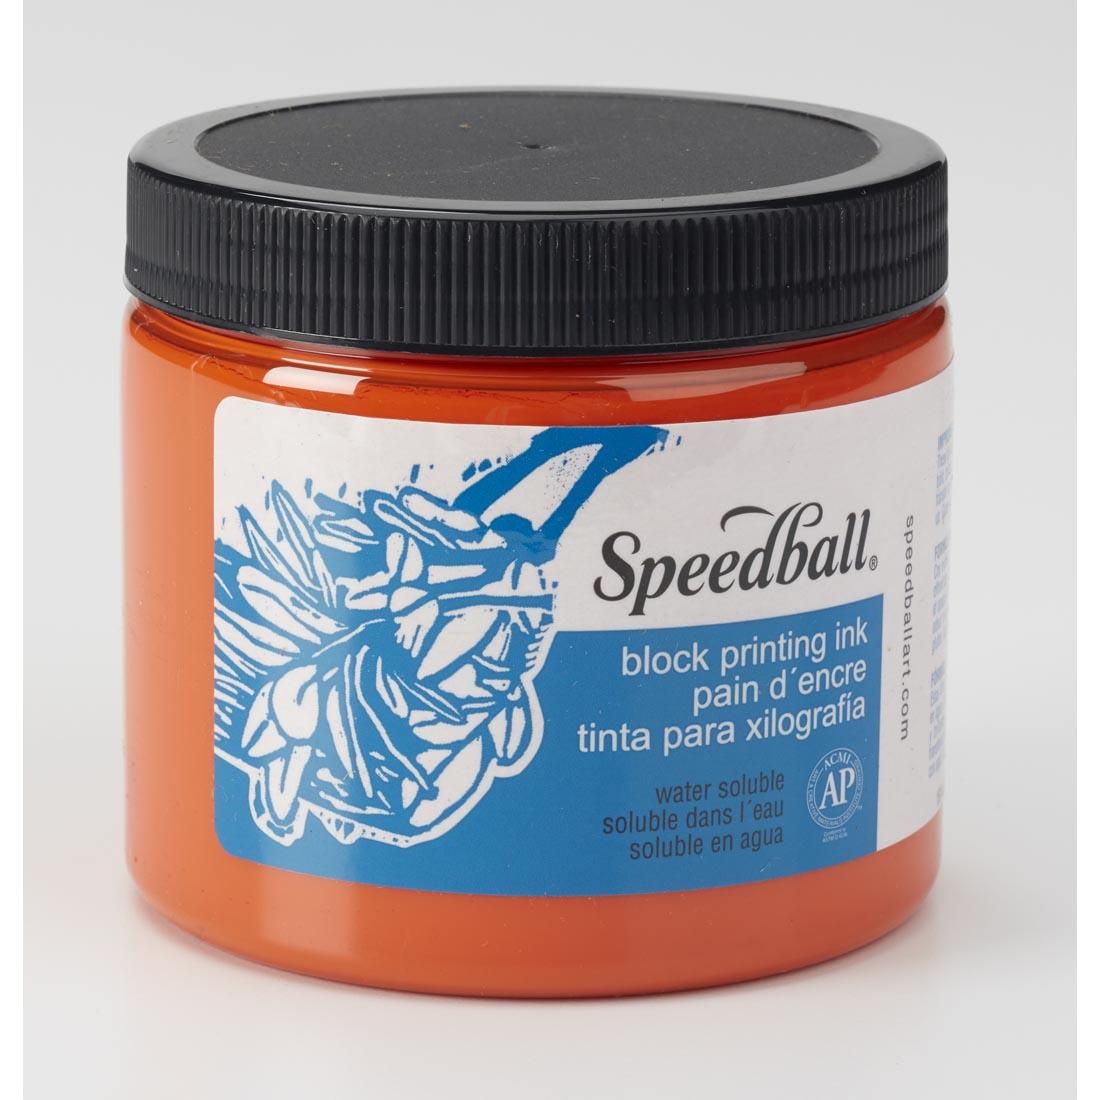 Jar of Orange Speedball Water-Soluble Block Printing Ink